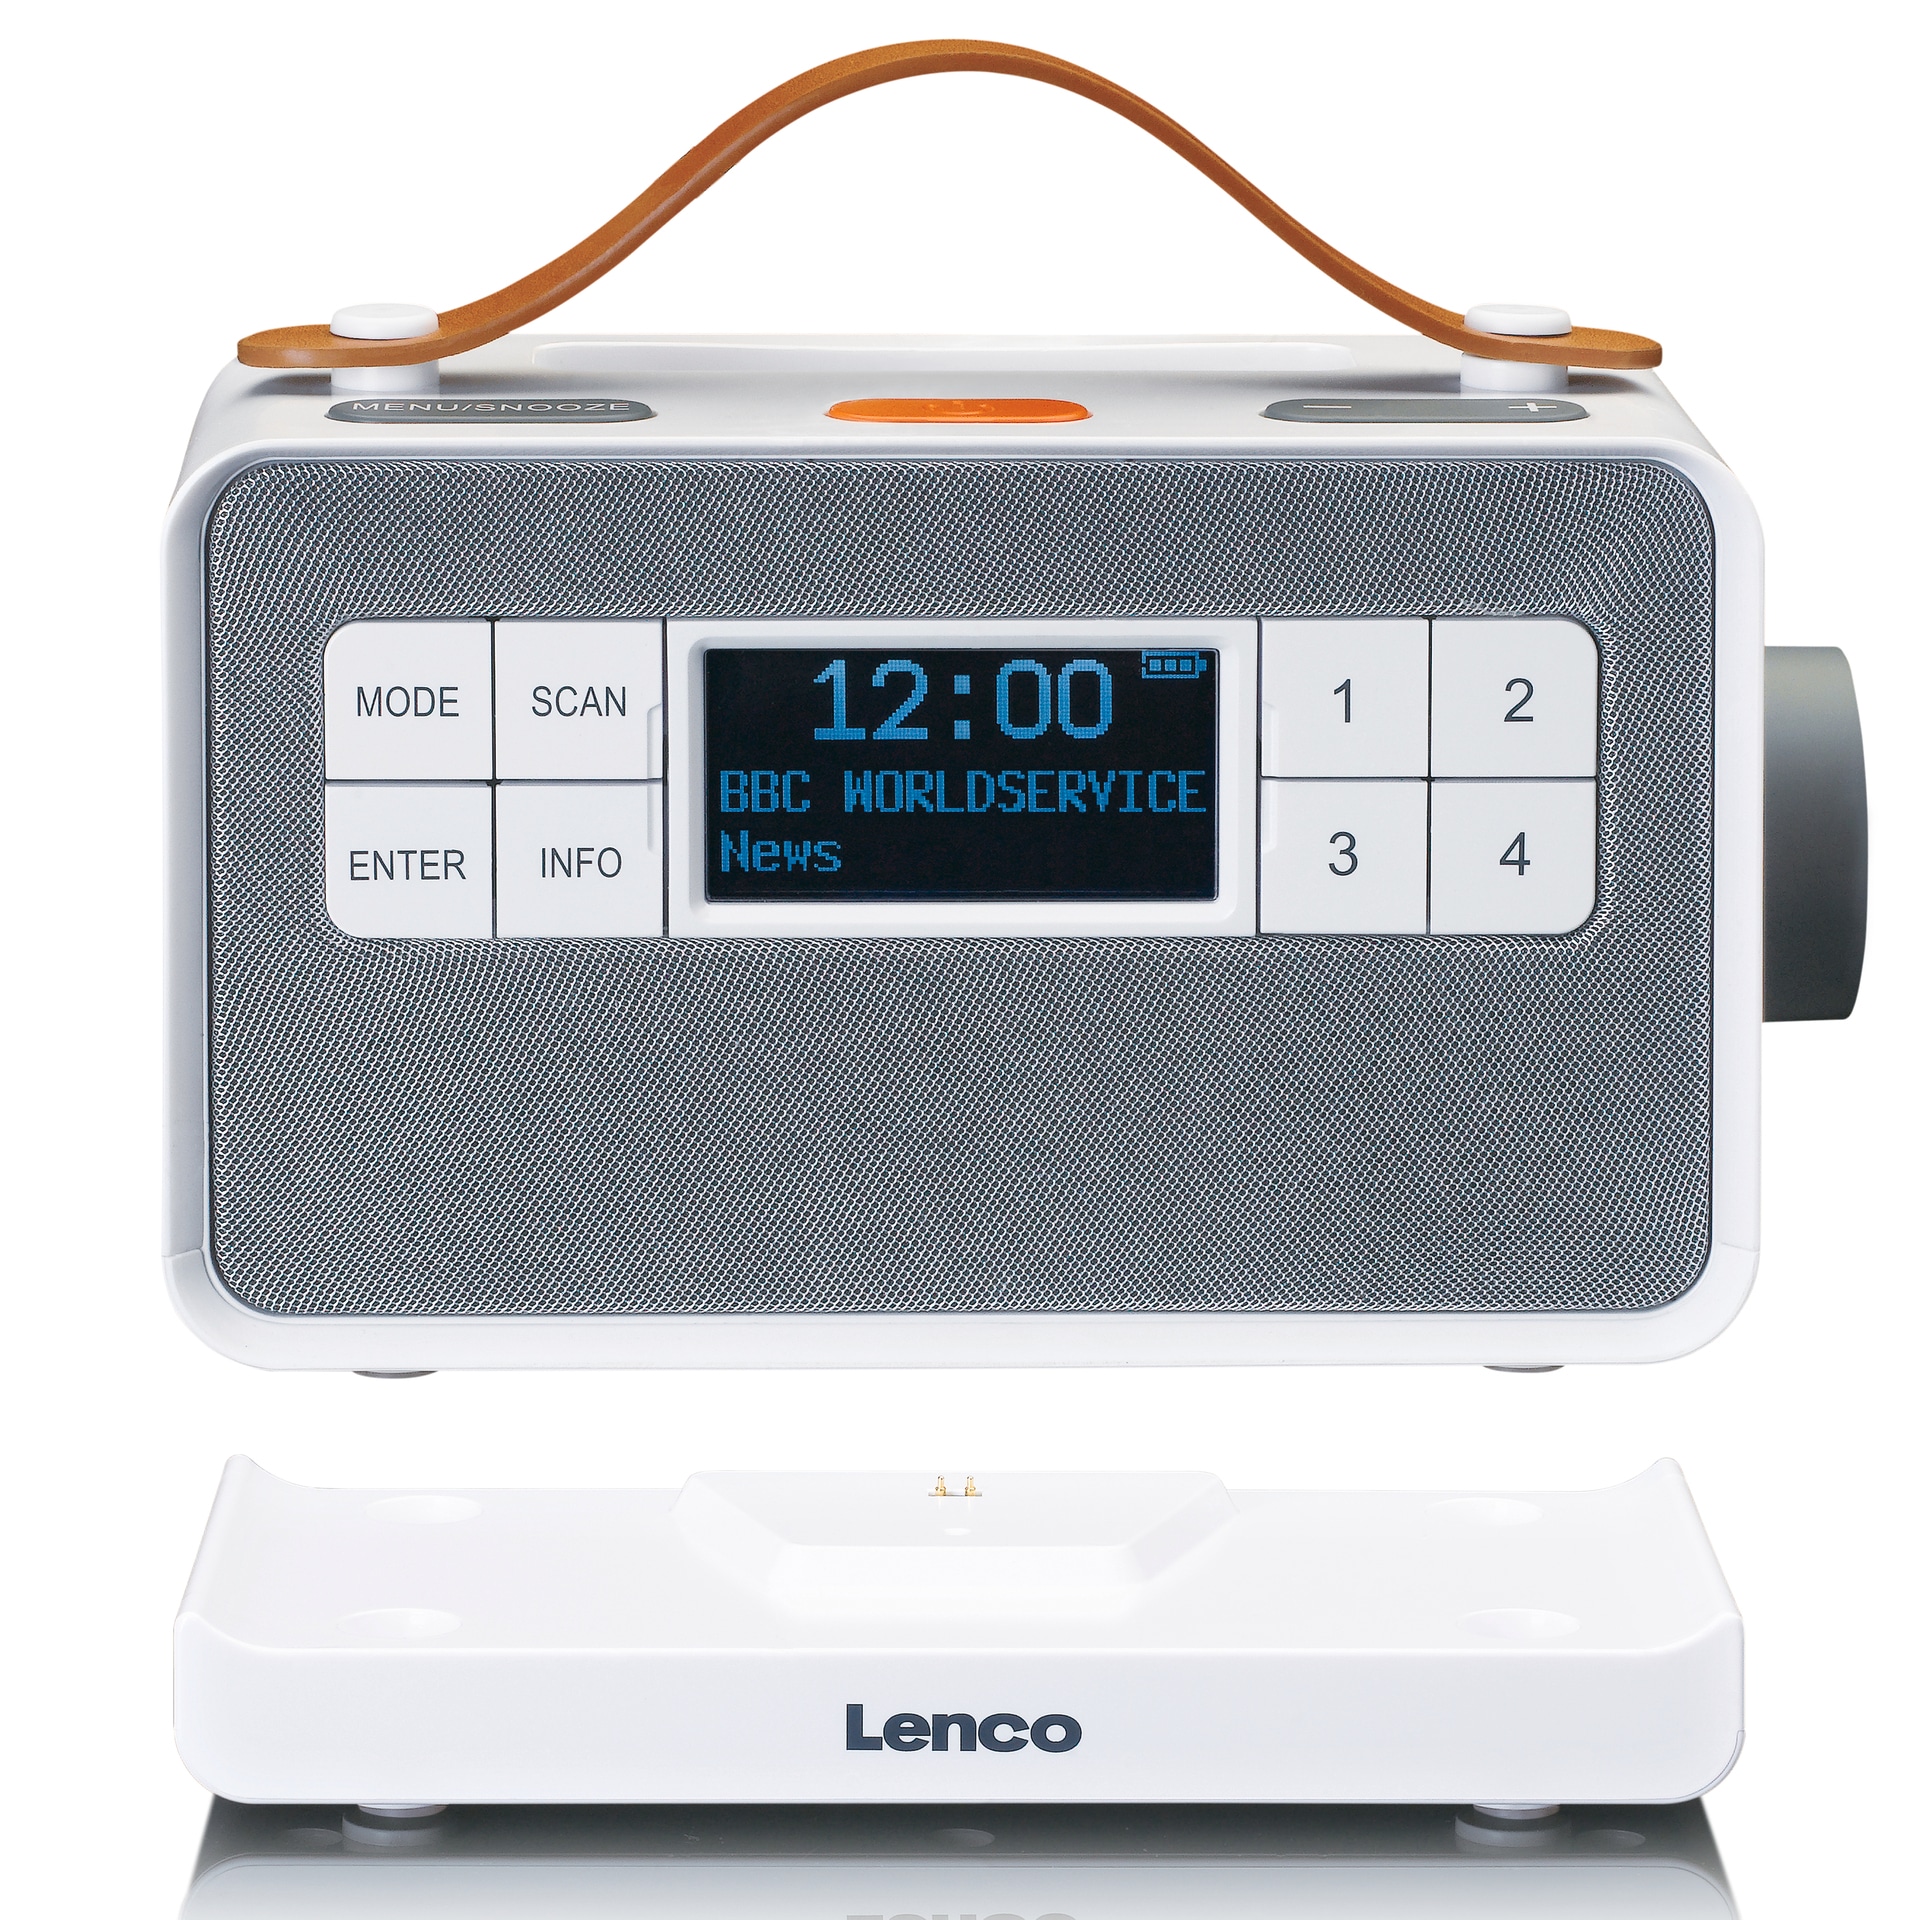 Lenco Digitalradio (DAB+) jetzt bestellen bei »PDR-065« OTTO